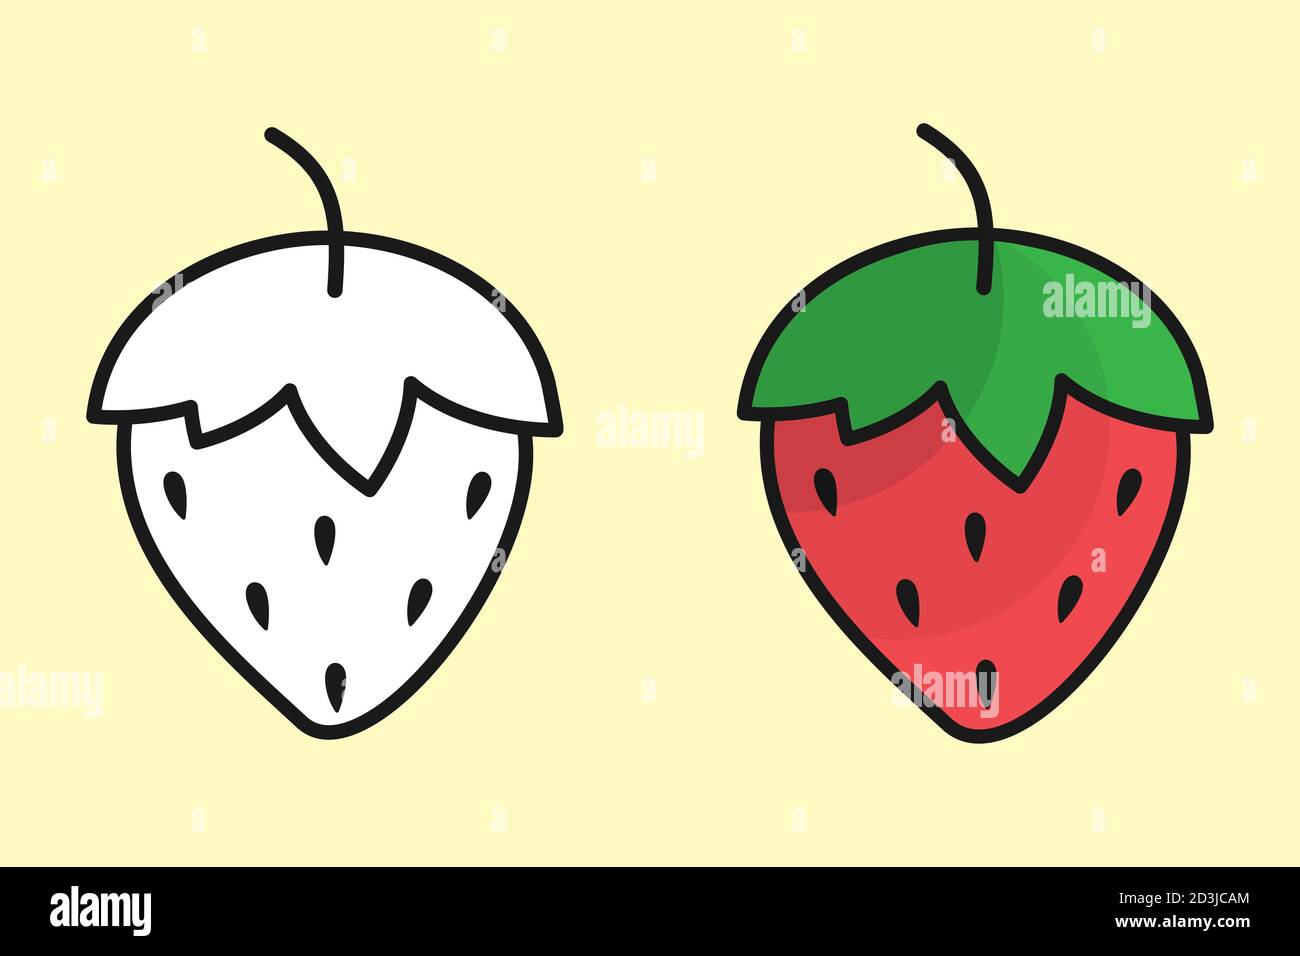 Erdbeere bearbeitbare Symbolgruppe. Beliebte Gartenfrucht in flachem geradlinigem Design, rot gefärbt, grün mit Schatten. Stock Vektor